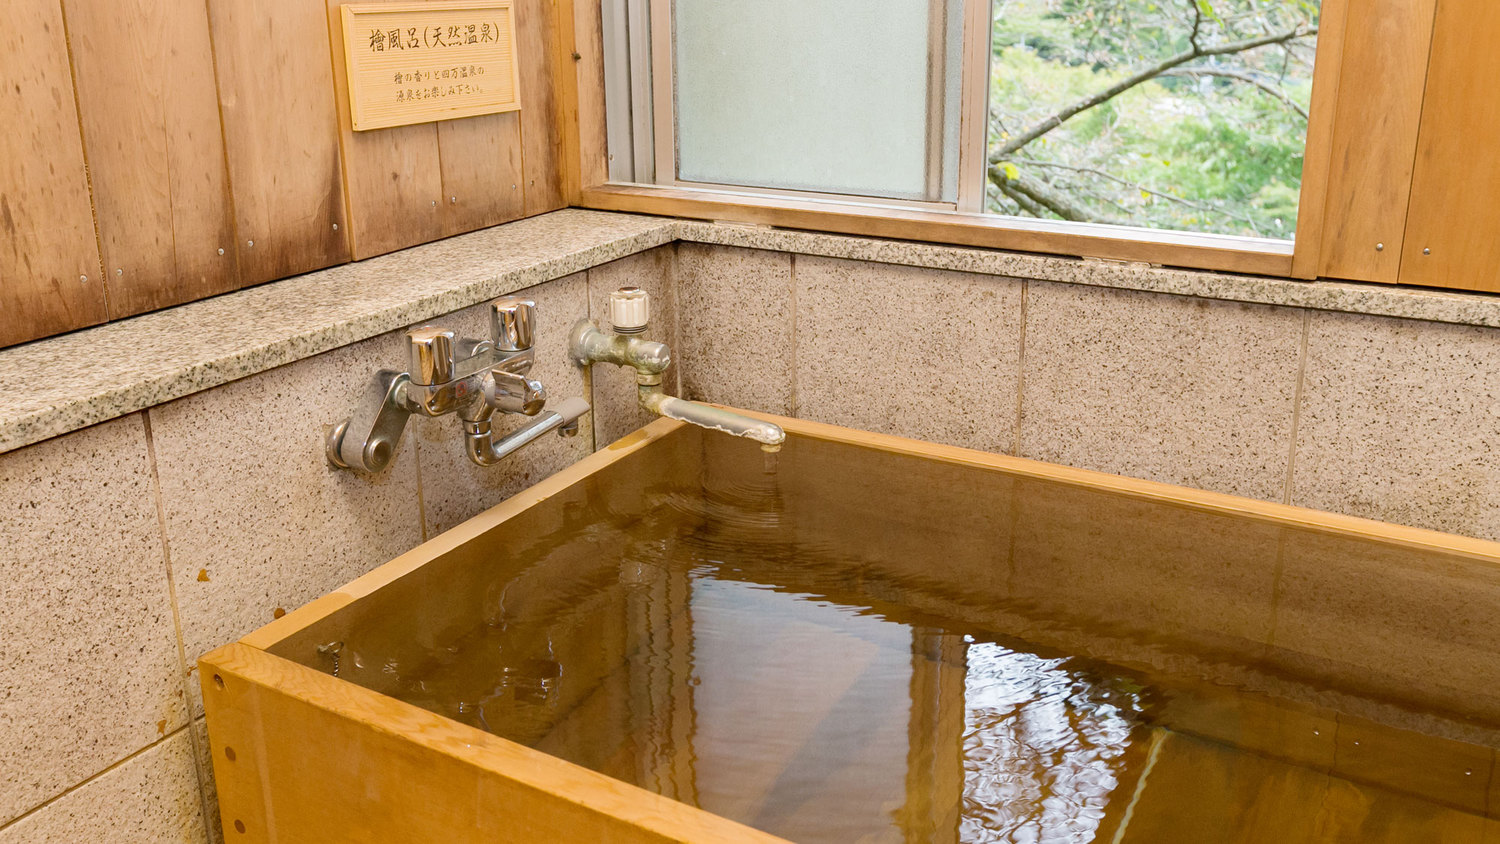 【プレミアム木涌館】清流の見える檜風呂付き客室